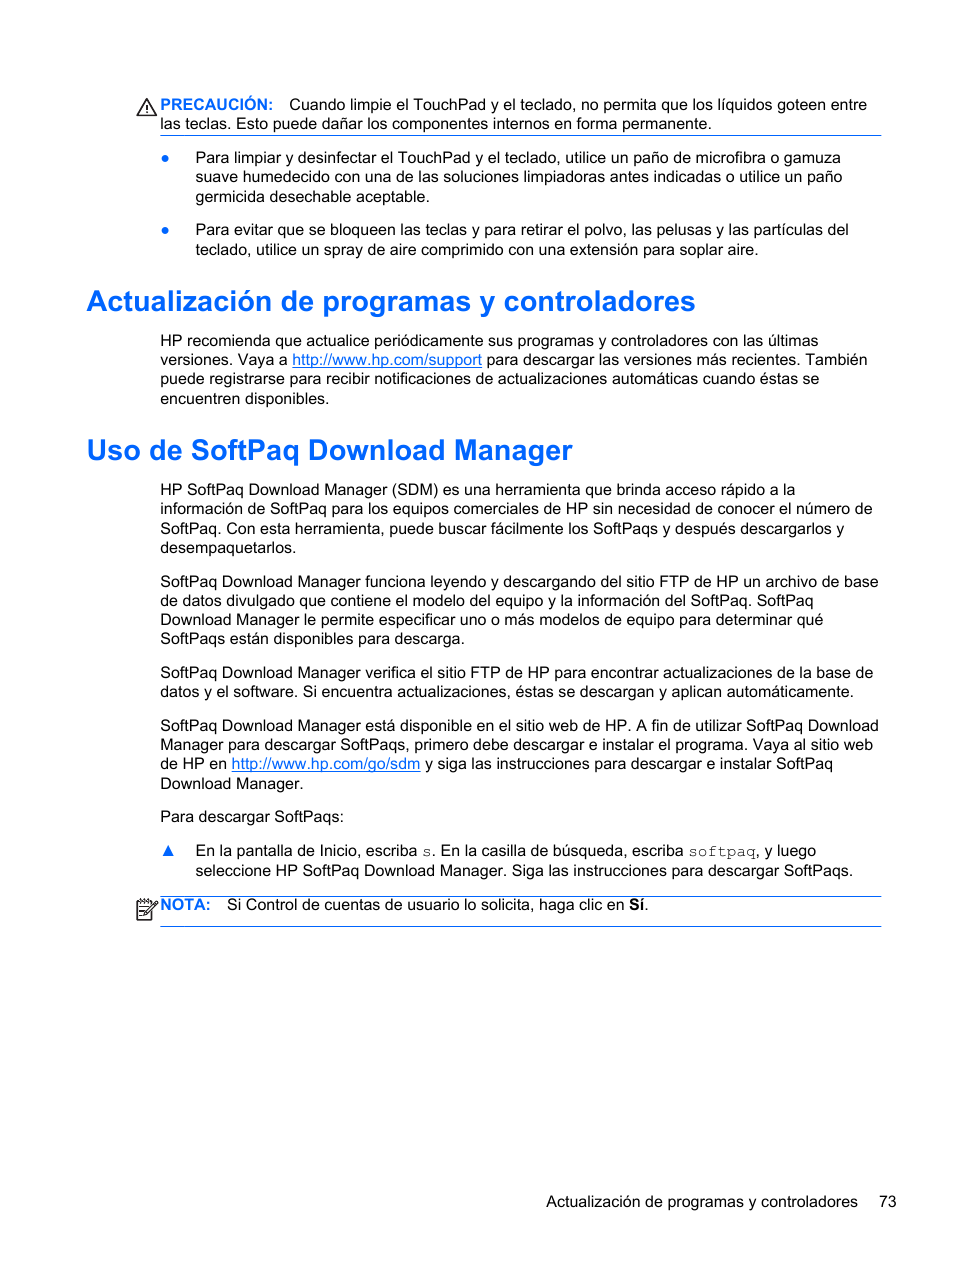 Actualización de programas y controladores, Uso de softpaq download manager | HP PC Notebook HP EliteBook 840 G1 Manual del usuario | Página 83 / 112